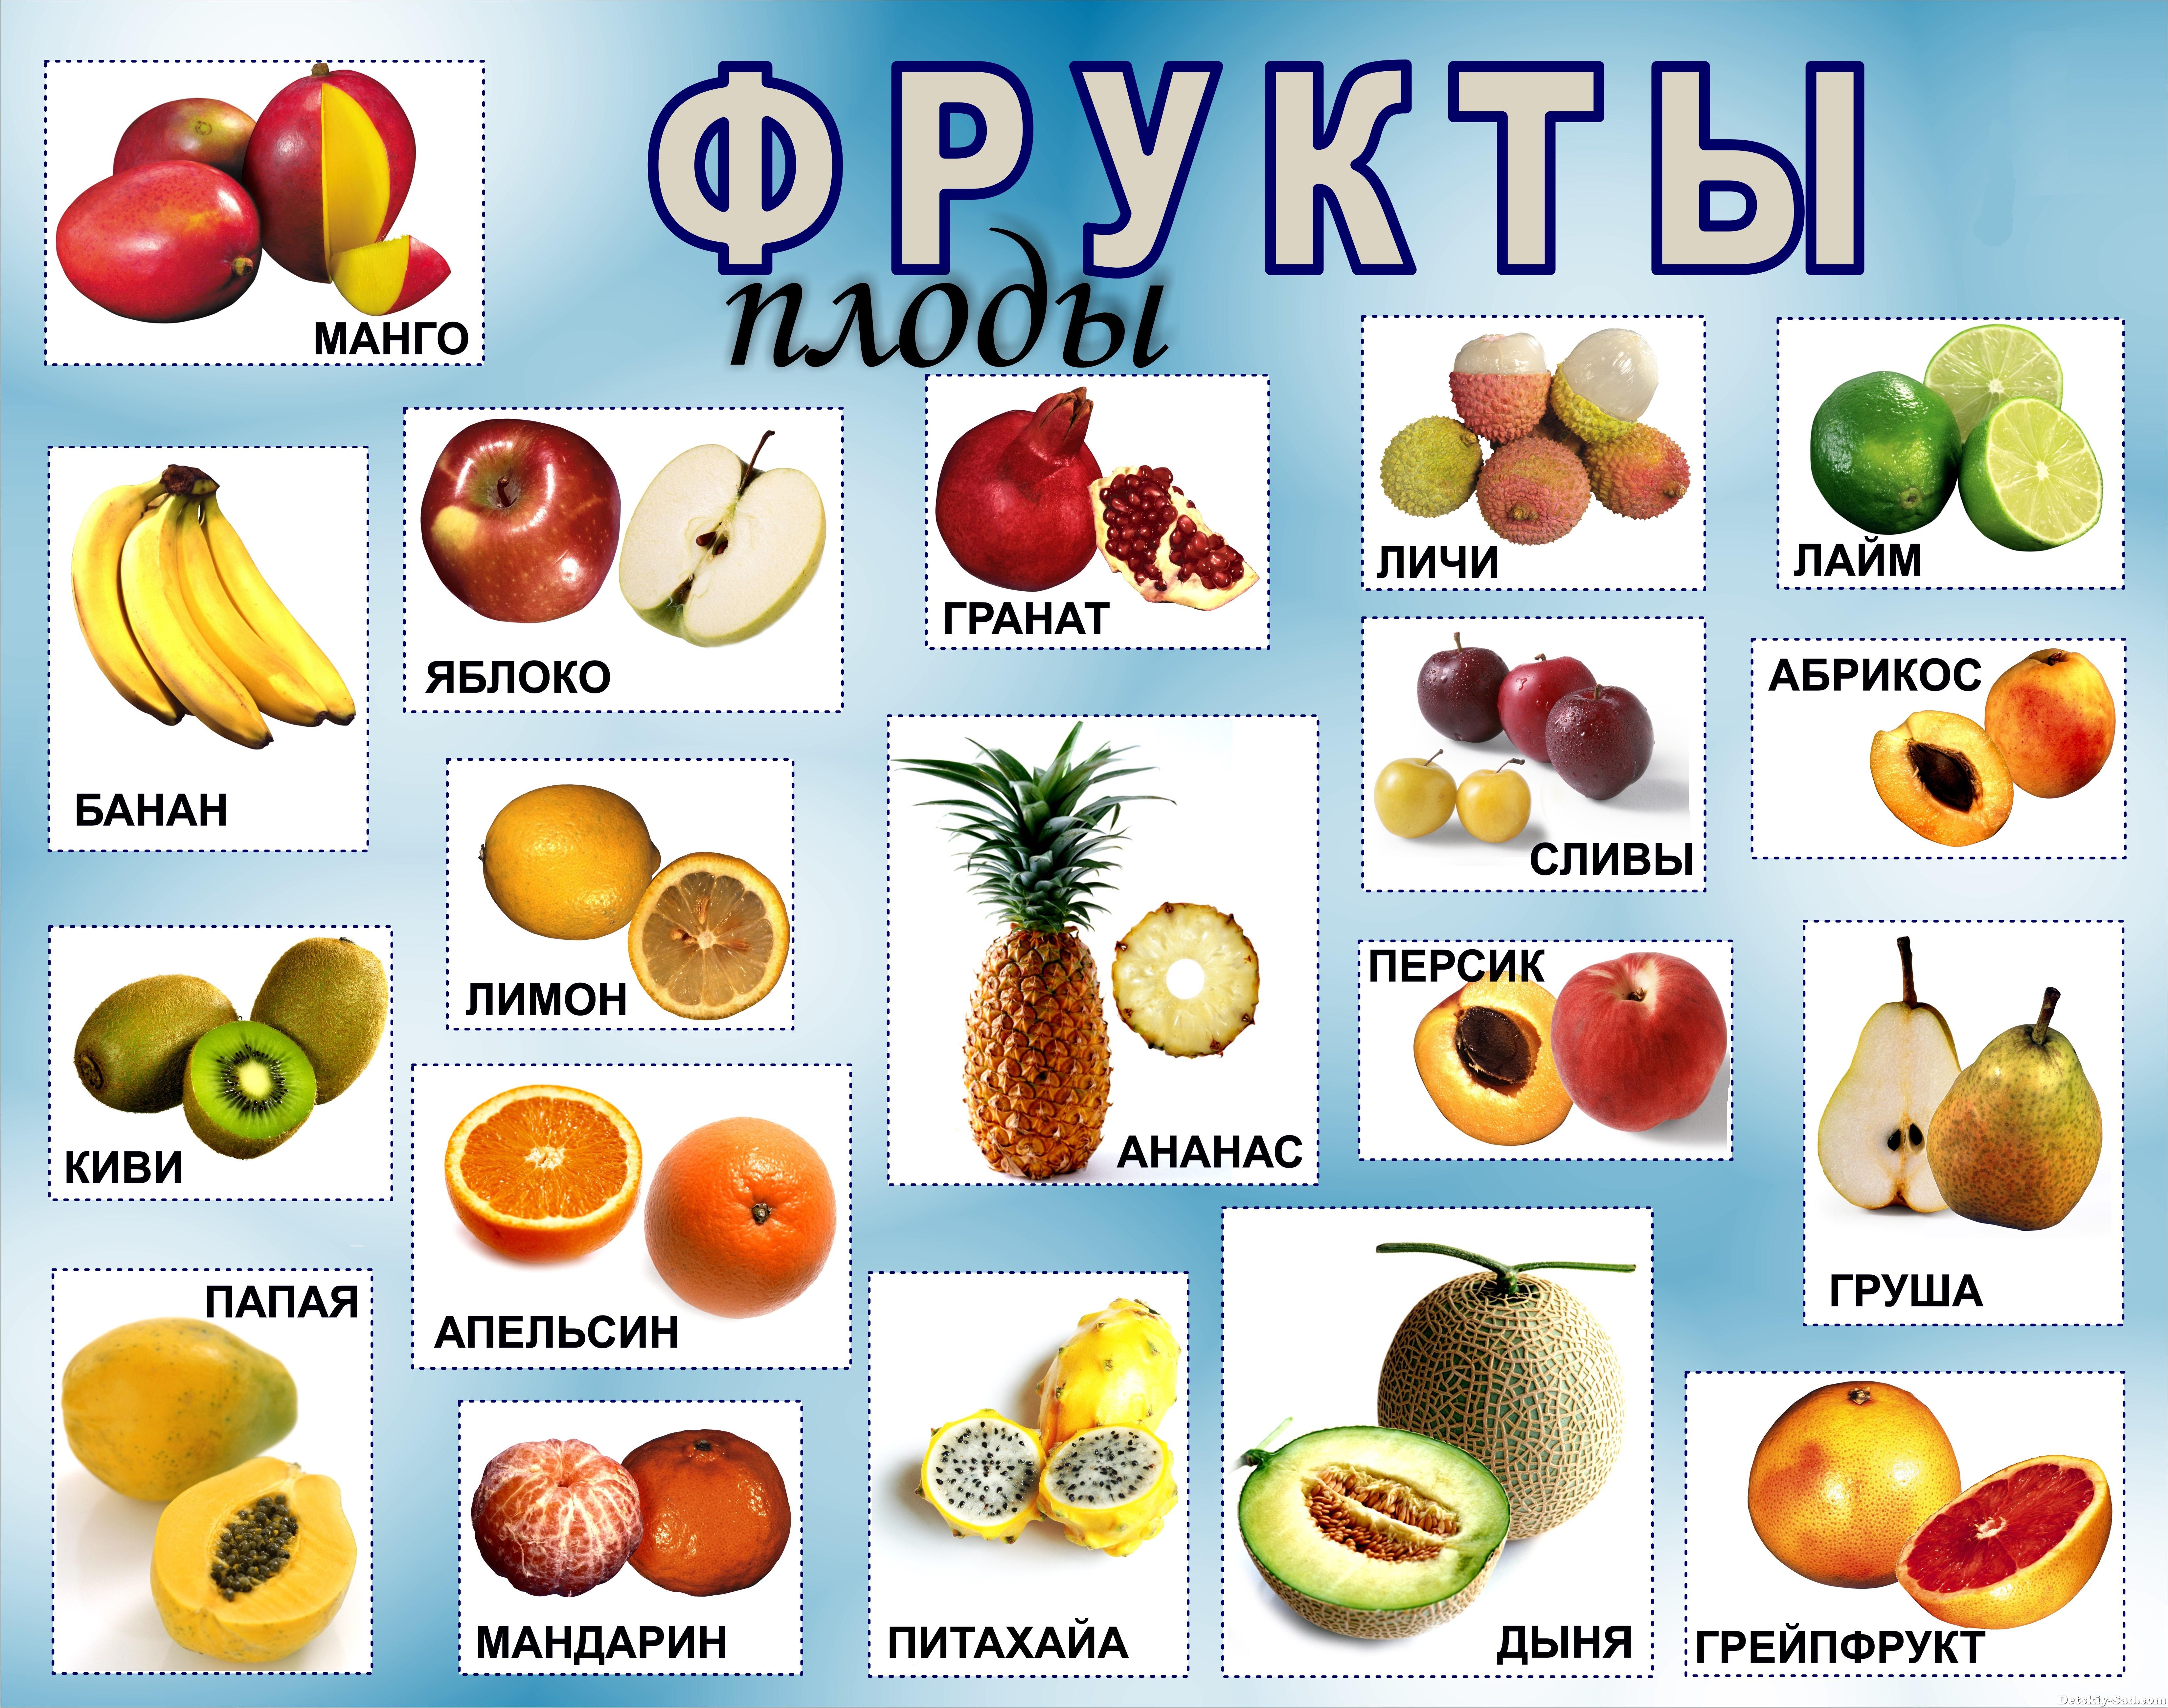 И т д и заканчивая. Название фруктов. Овощи и фрукты названия. Фрукты и ягоды с названиями. Название фруктов с картинками.